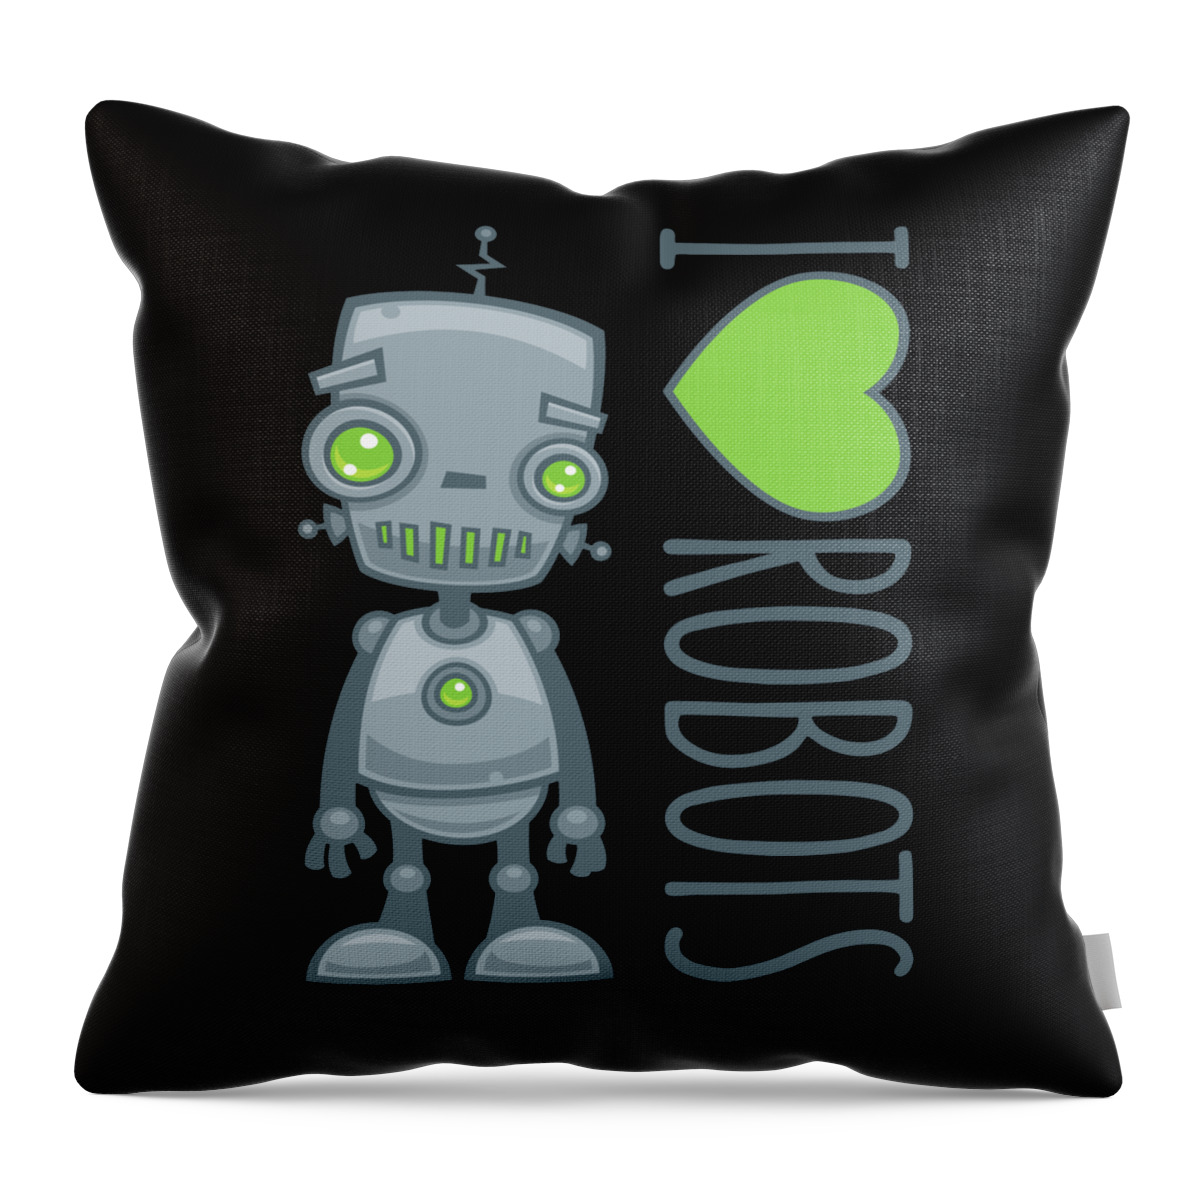 Robot Throw Pillow featuring the digital art I Love Robots by John Schwegel